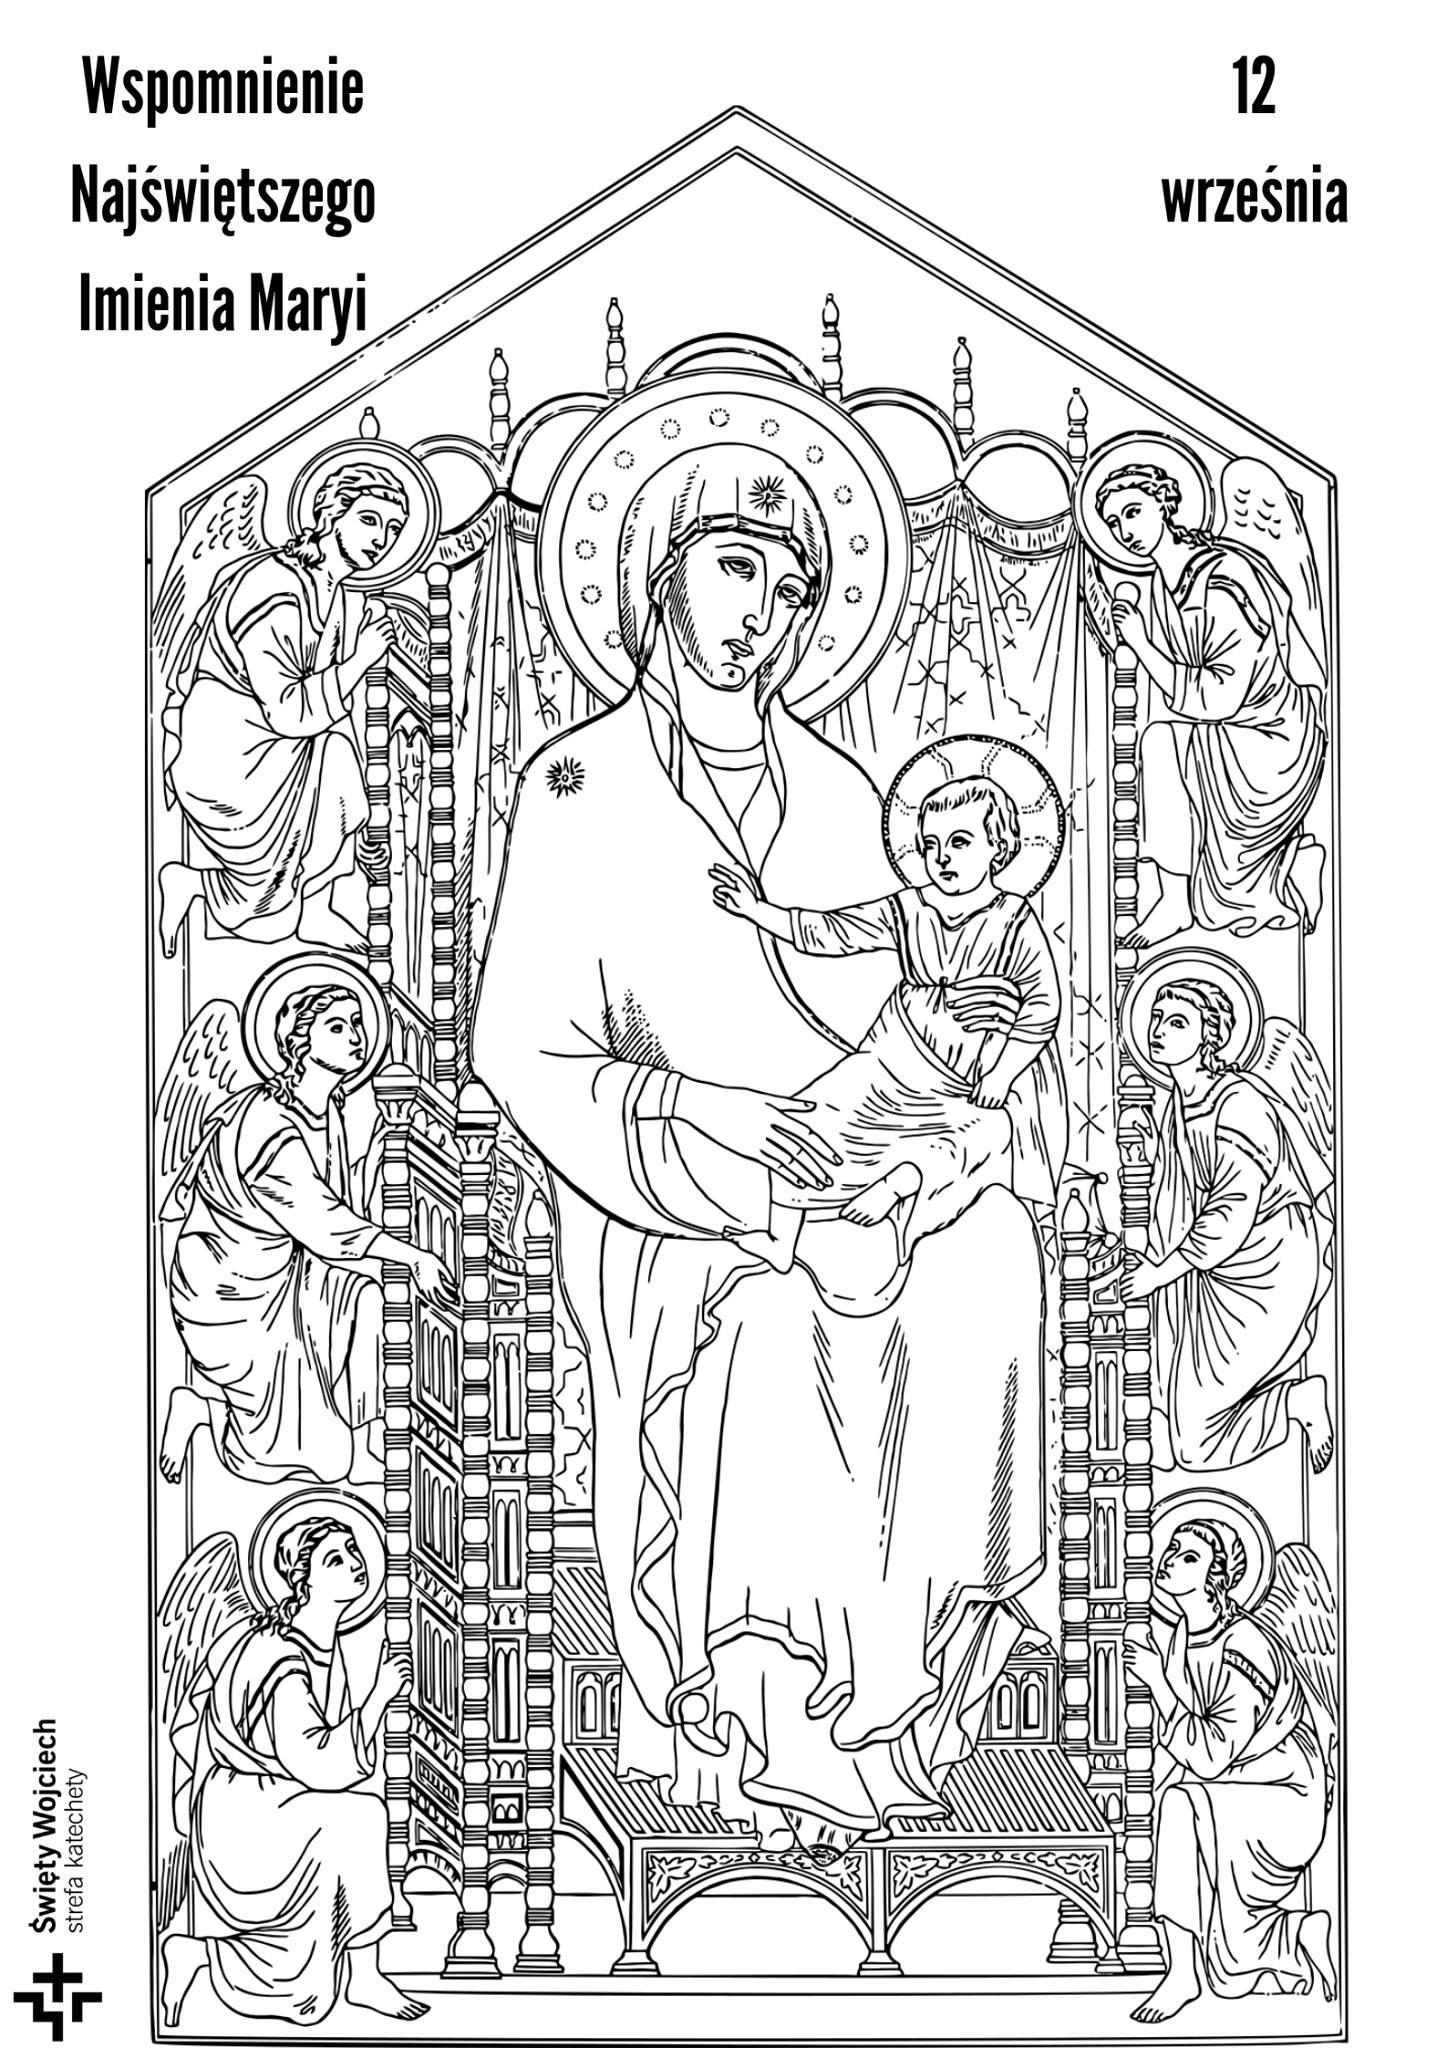 Wspomnienie liturgiczne Najświętszego Imienia Maryi (12 września) - kolorowanka